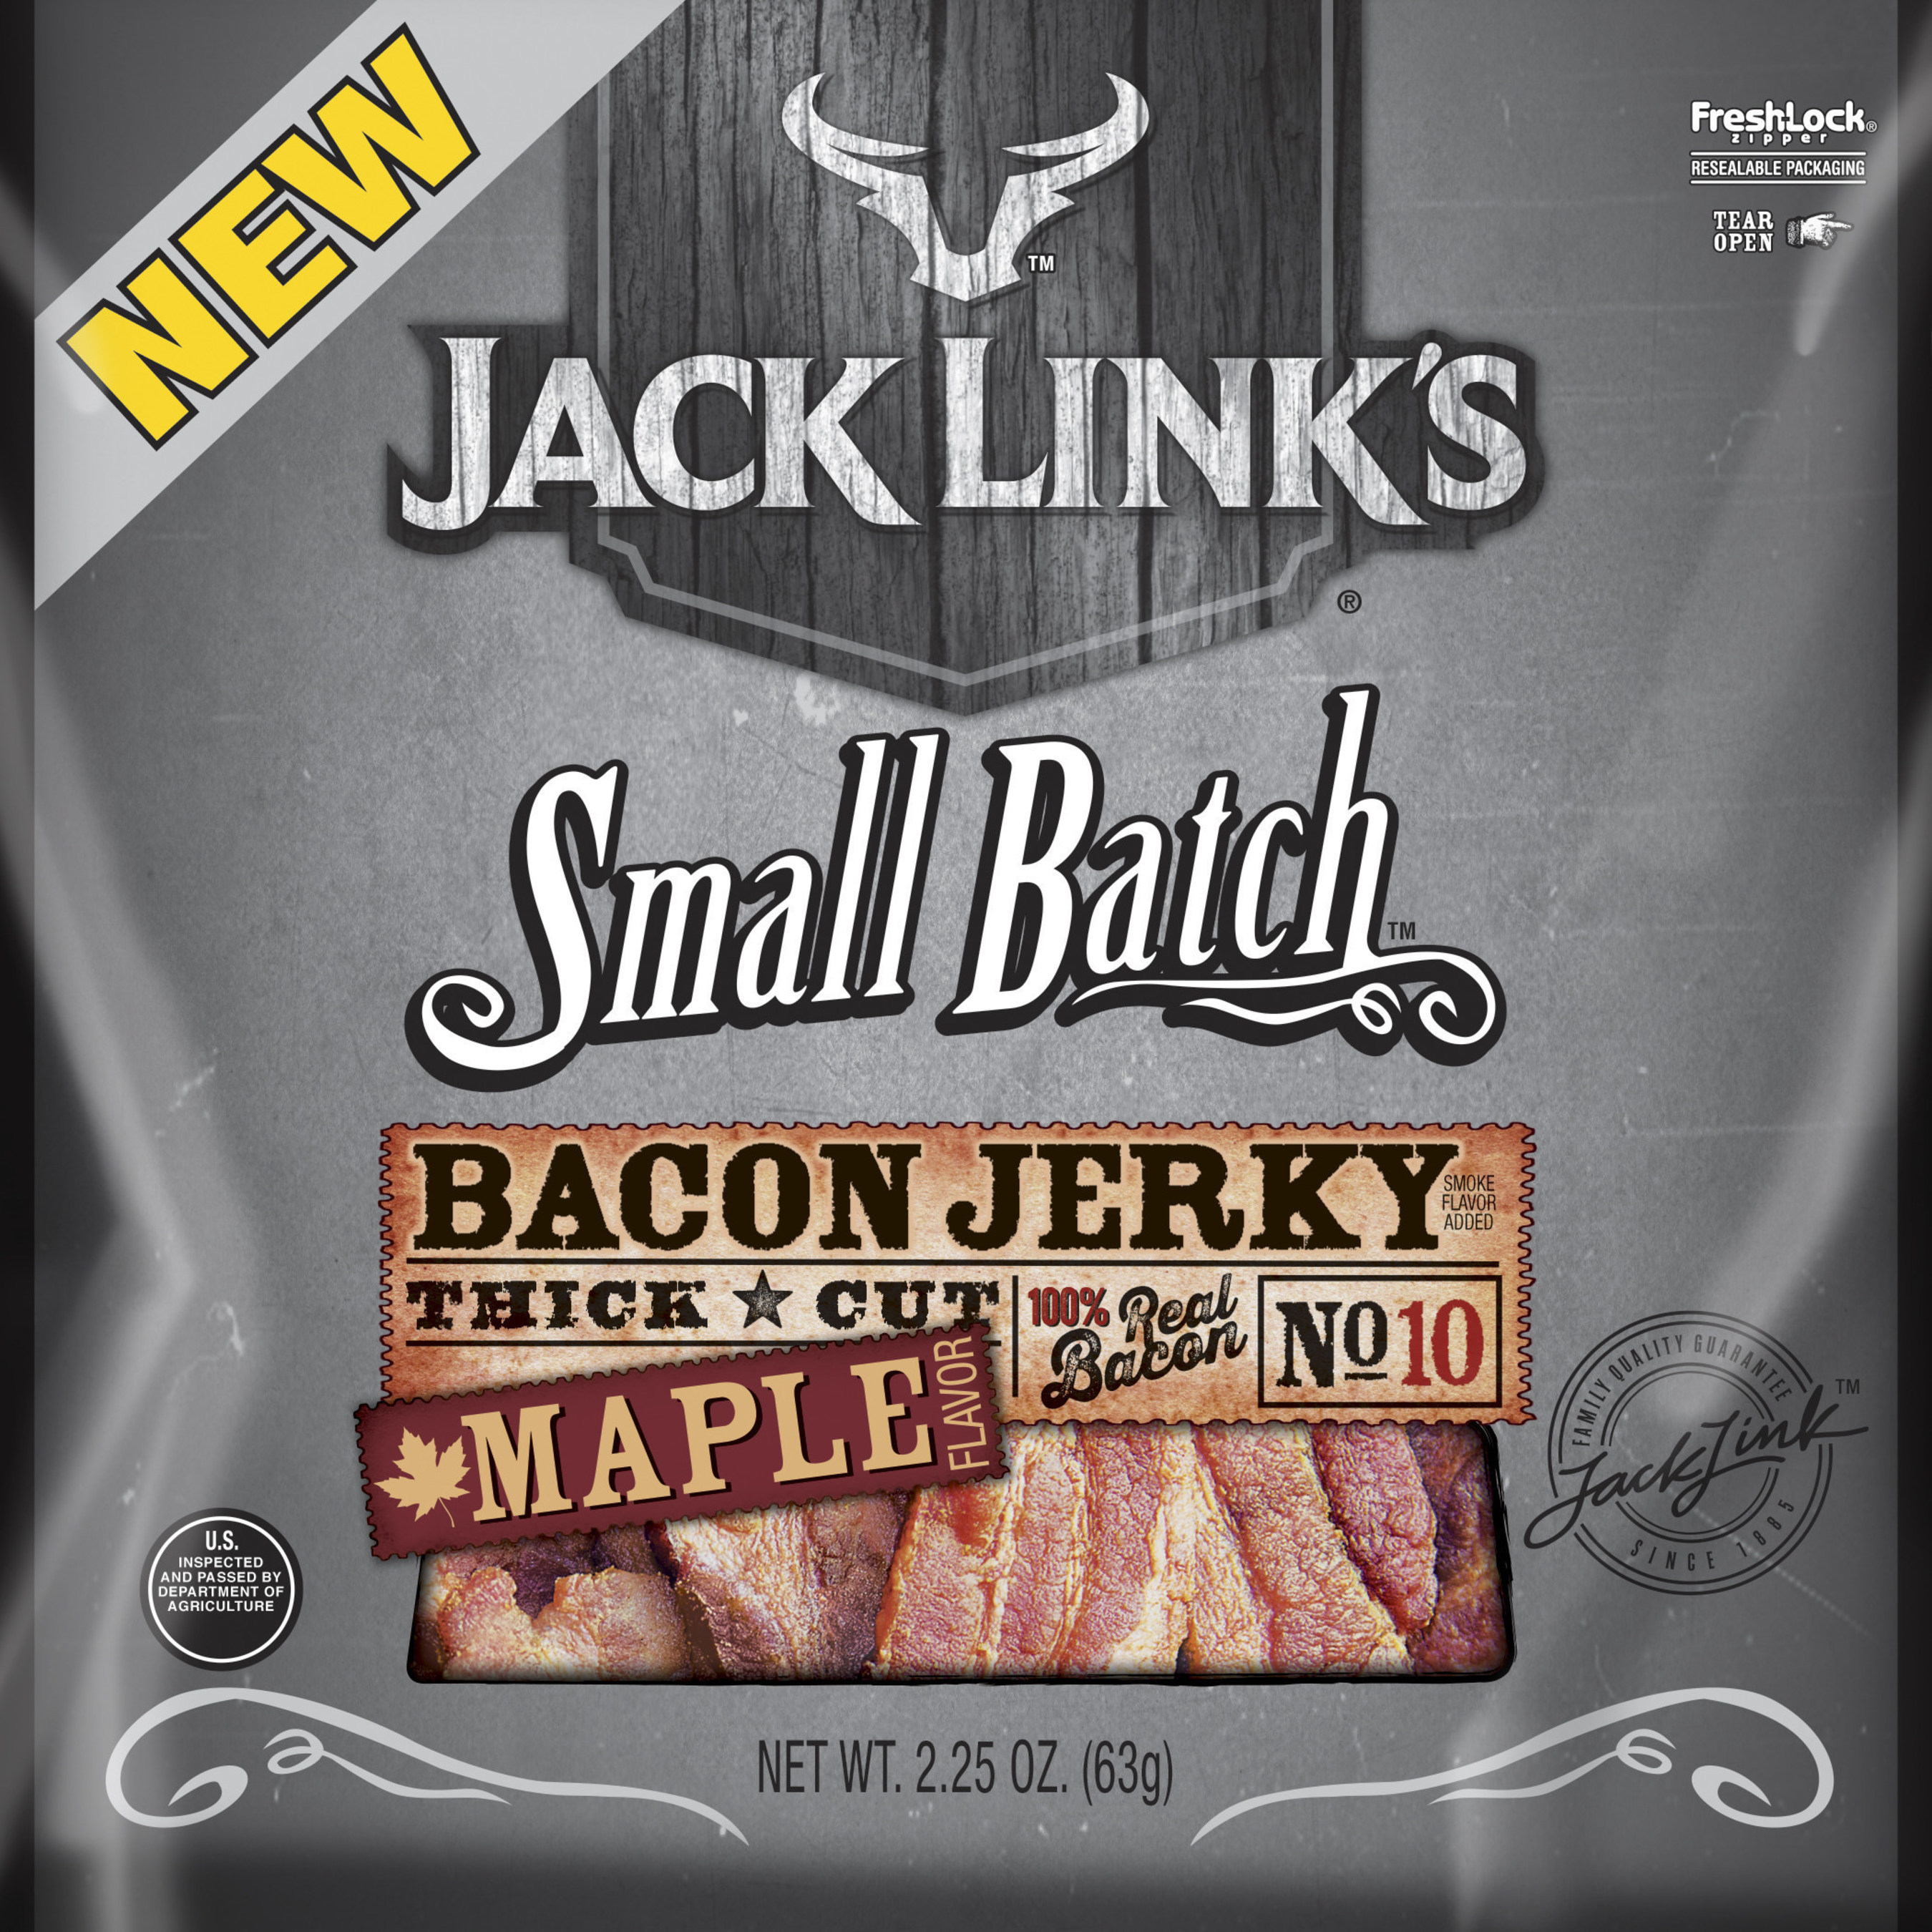 Jack Link's Small Batch Maple Bacon Jerky